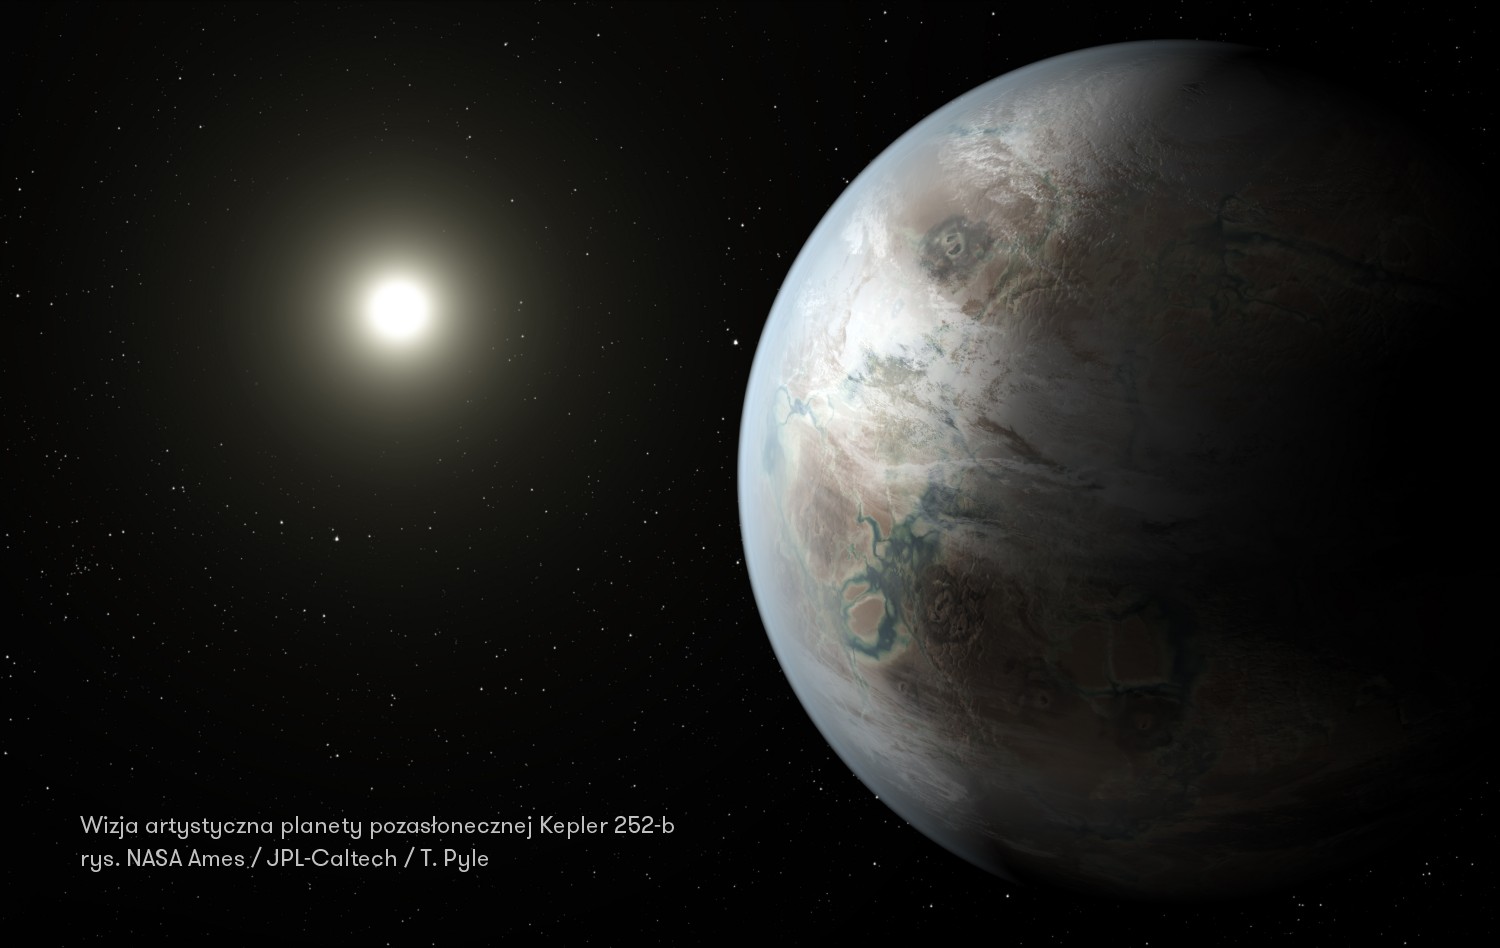 Wizja artystyczna planety pozasłonecznej Kepler 252-b